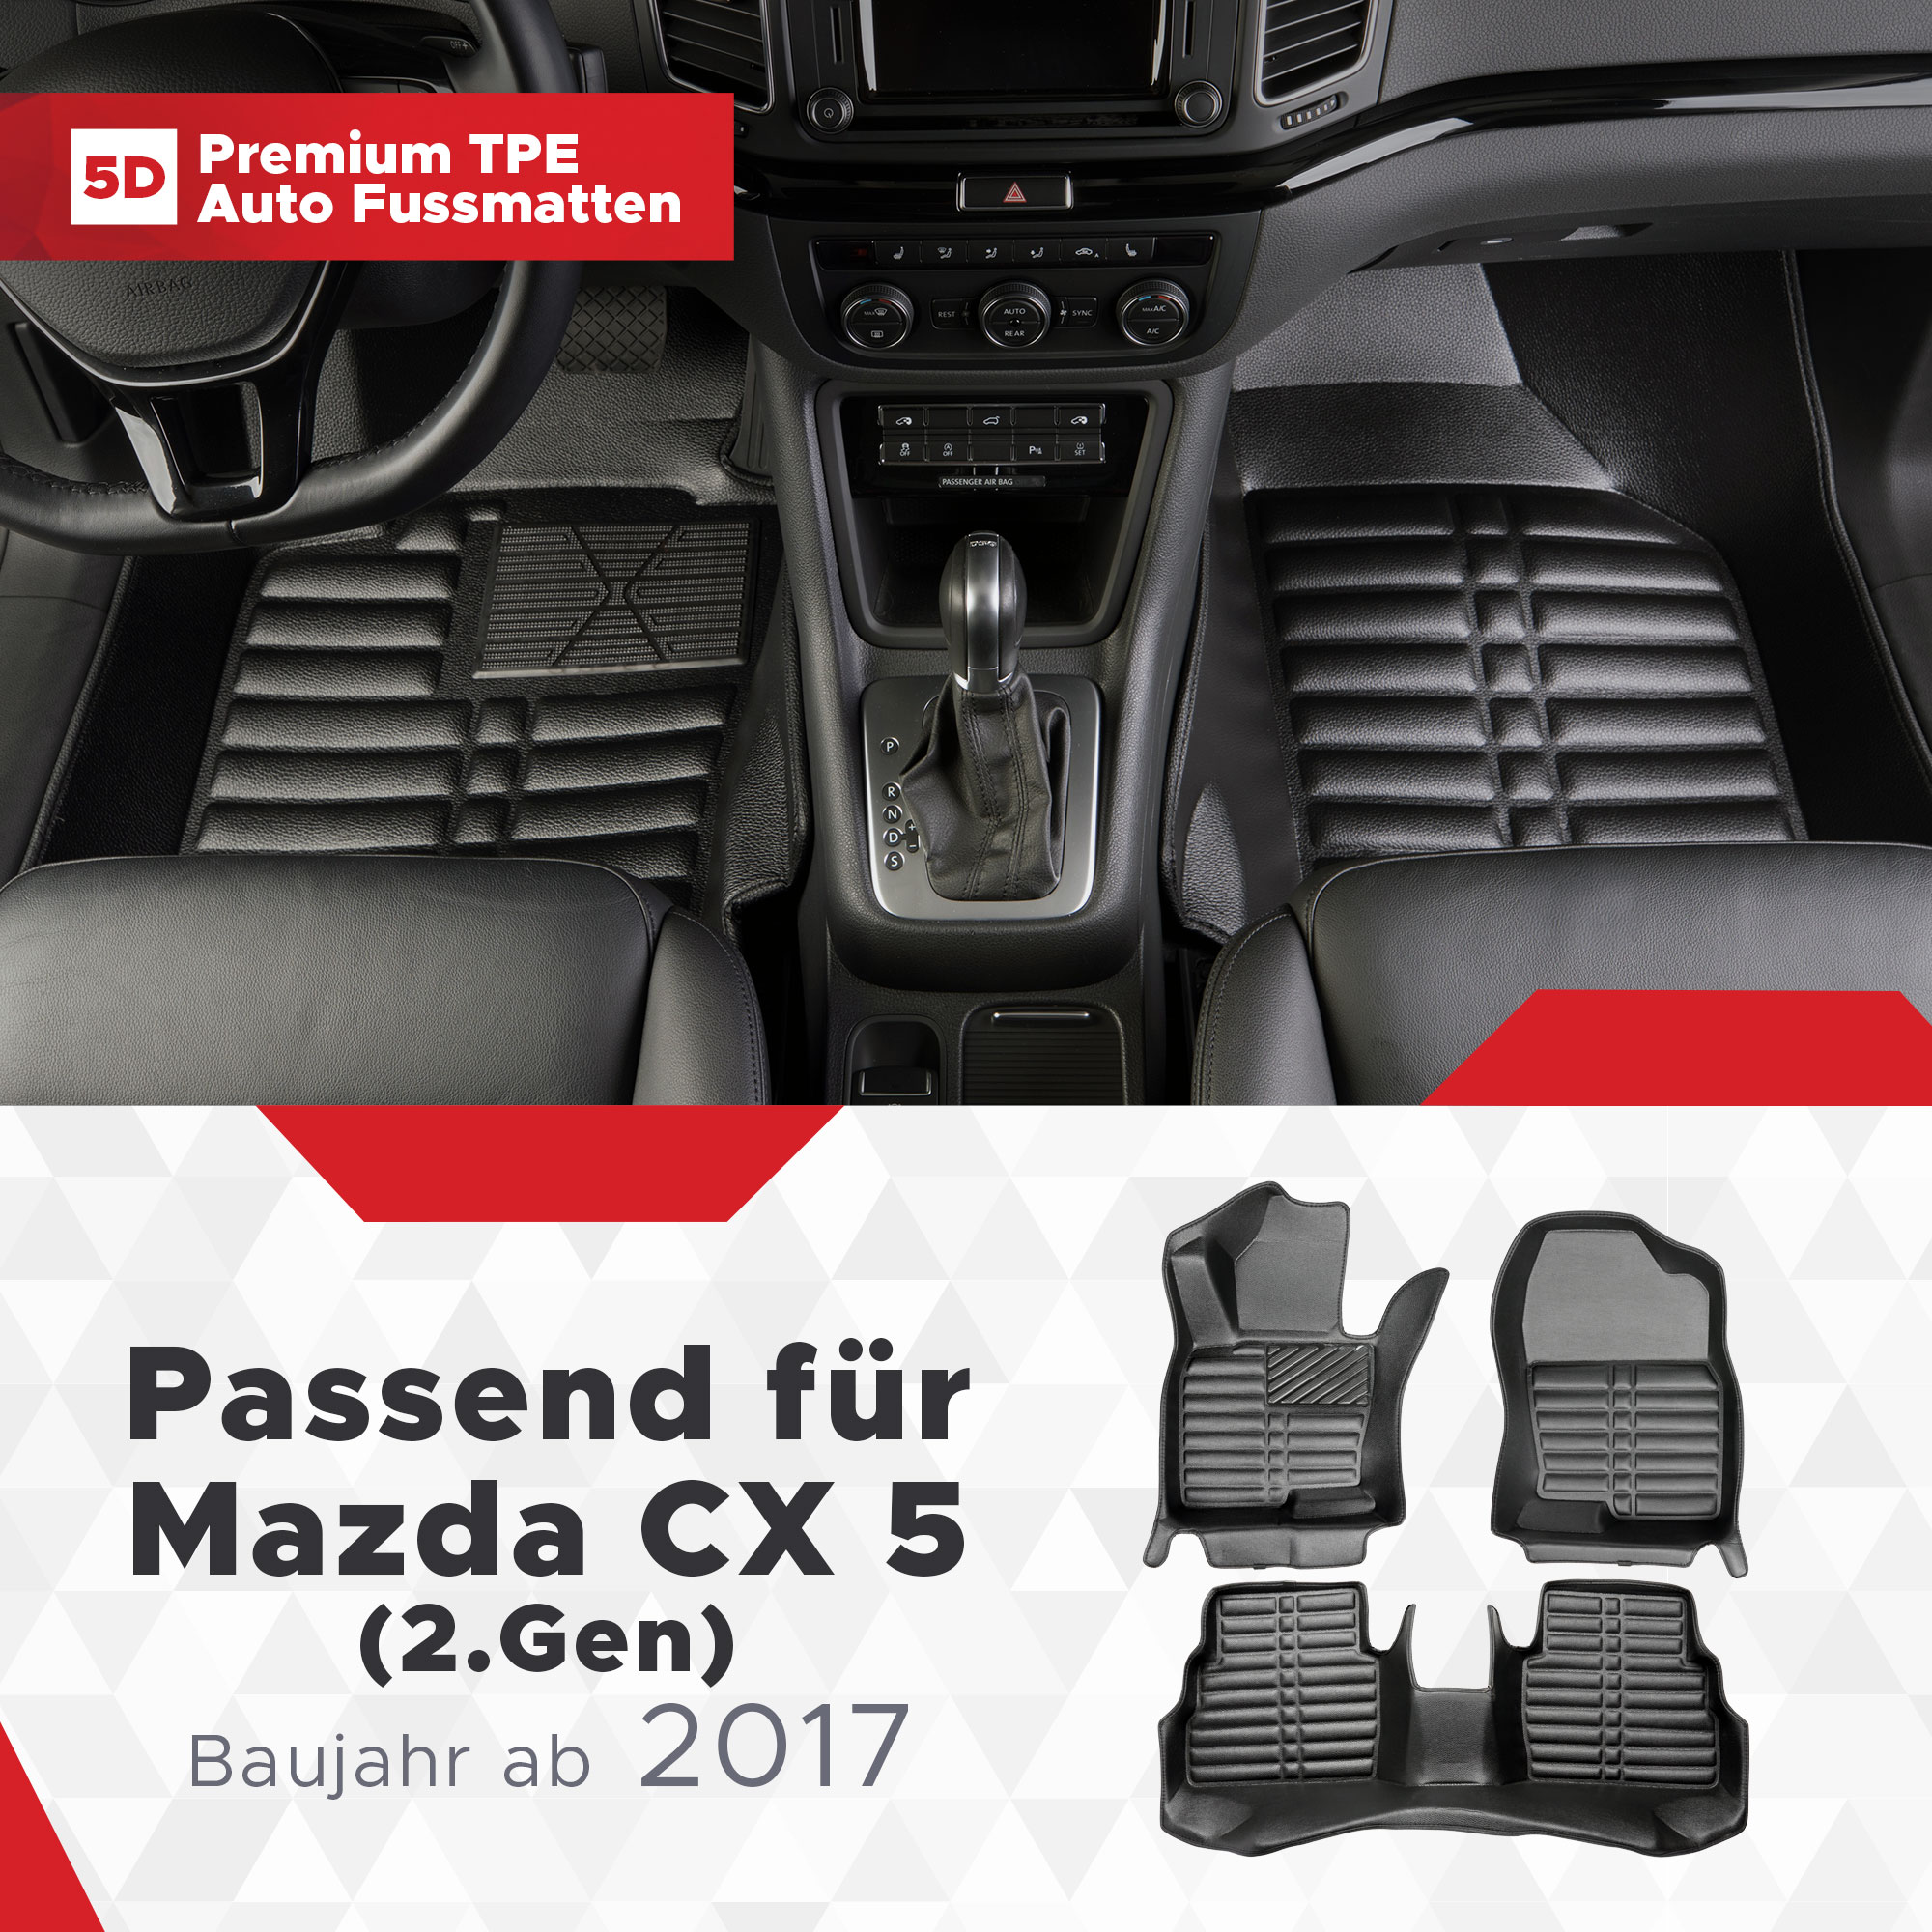 5D Mazda CX Bj ab Fussmatten 2017 (2.Gen) 5 TPE